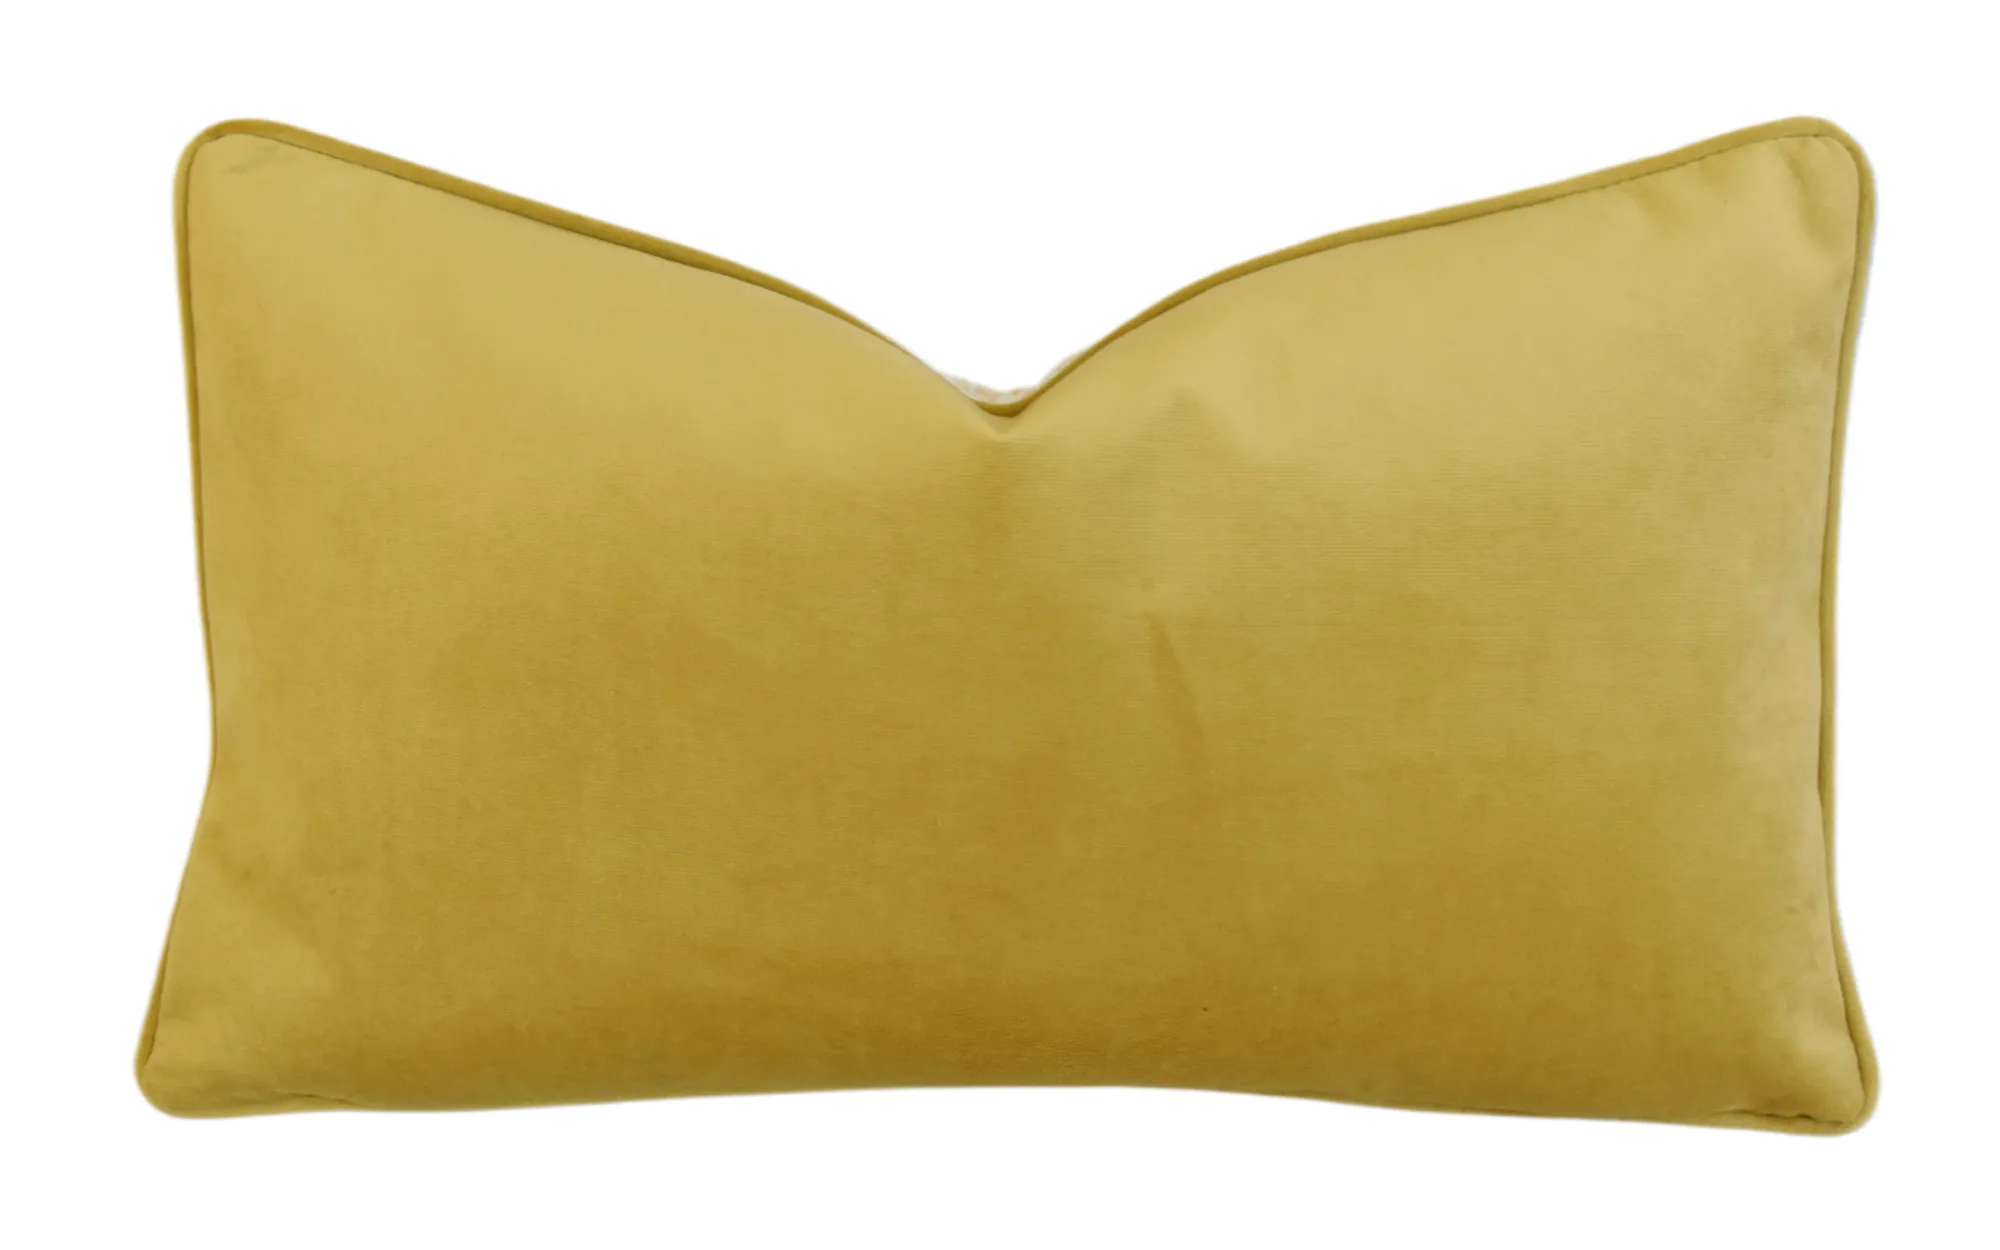 Mariano Fortuny Sevres Italian Pillow